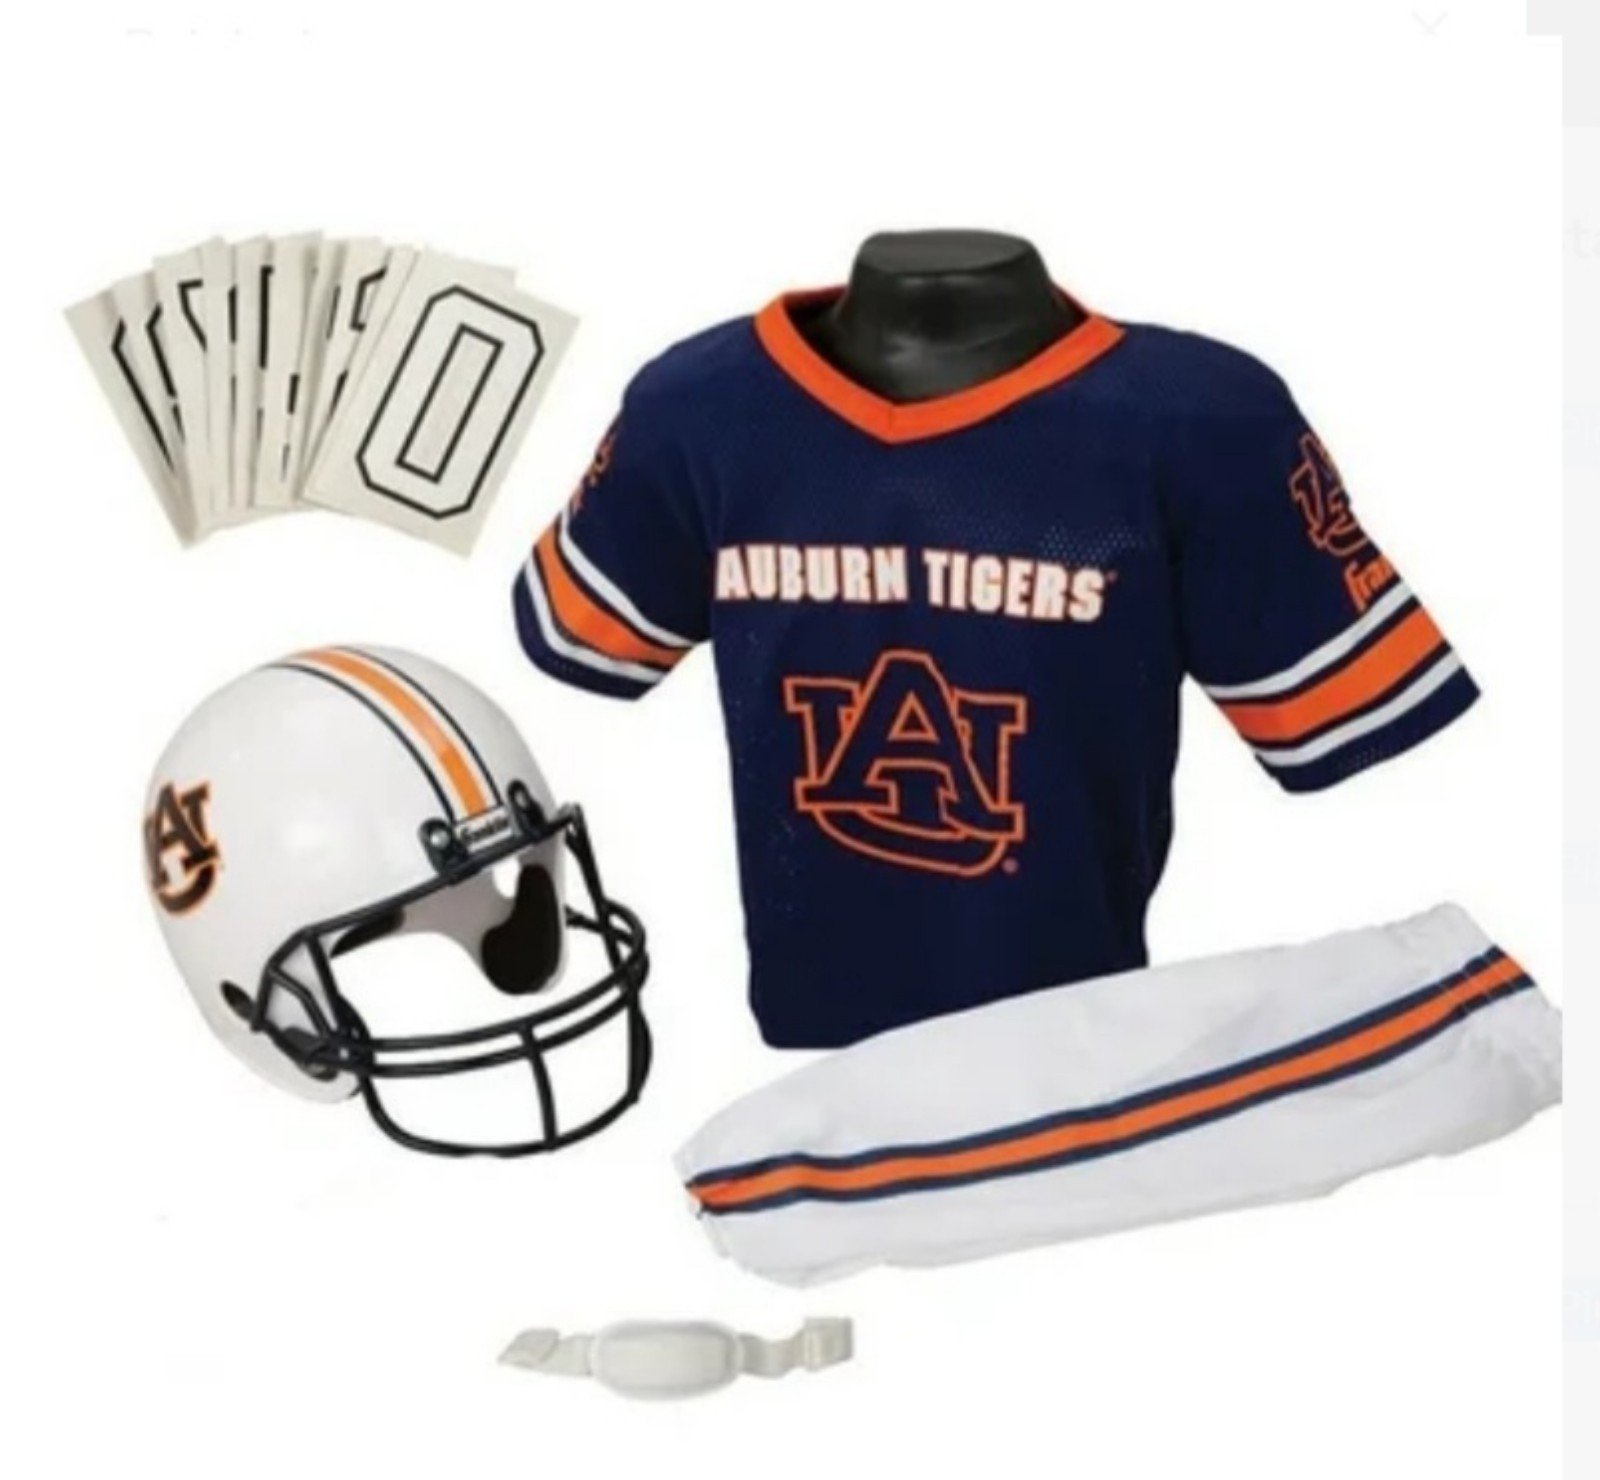 NCAA Auburn Tigers/Kids Helmet and Uniform CRfj2jjVC